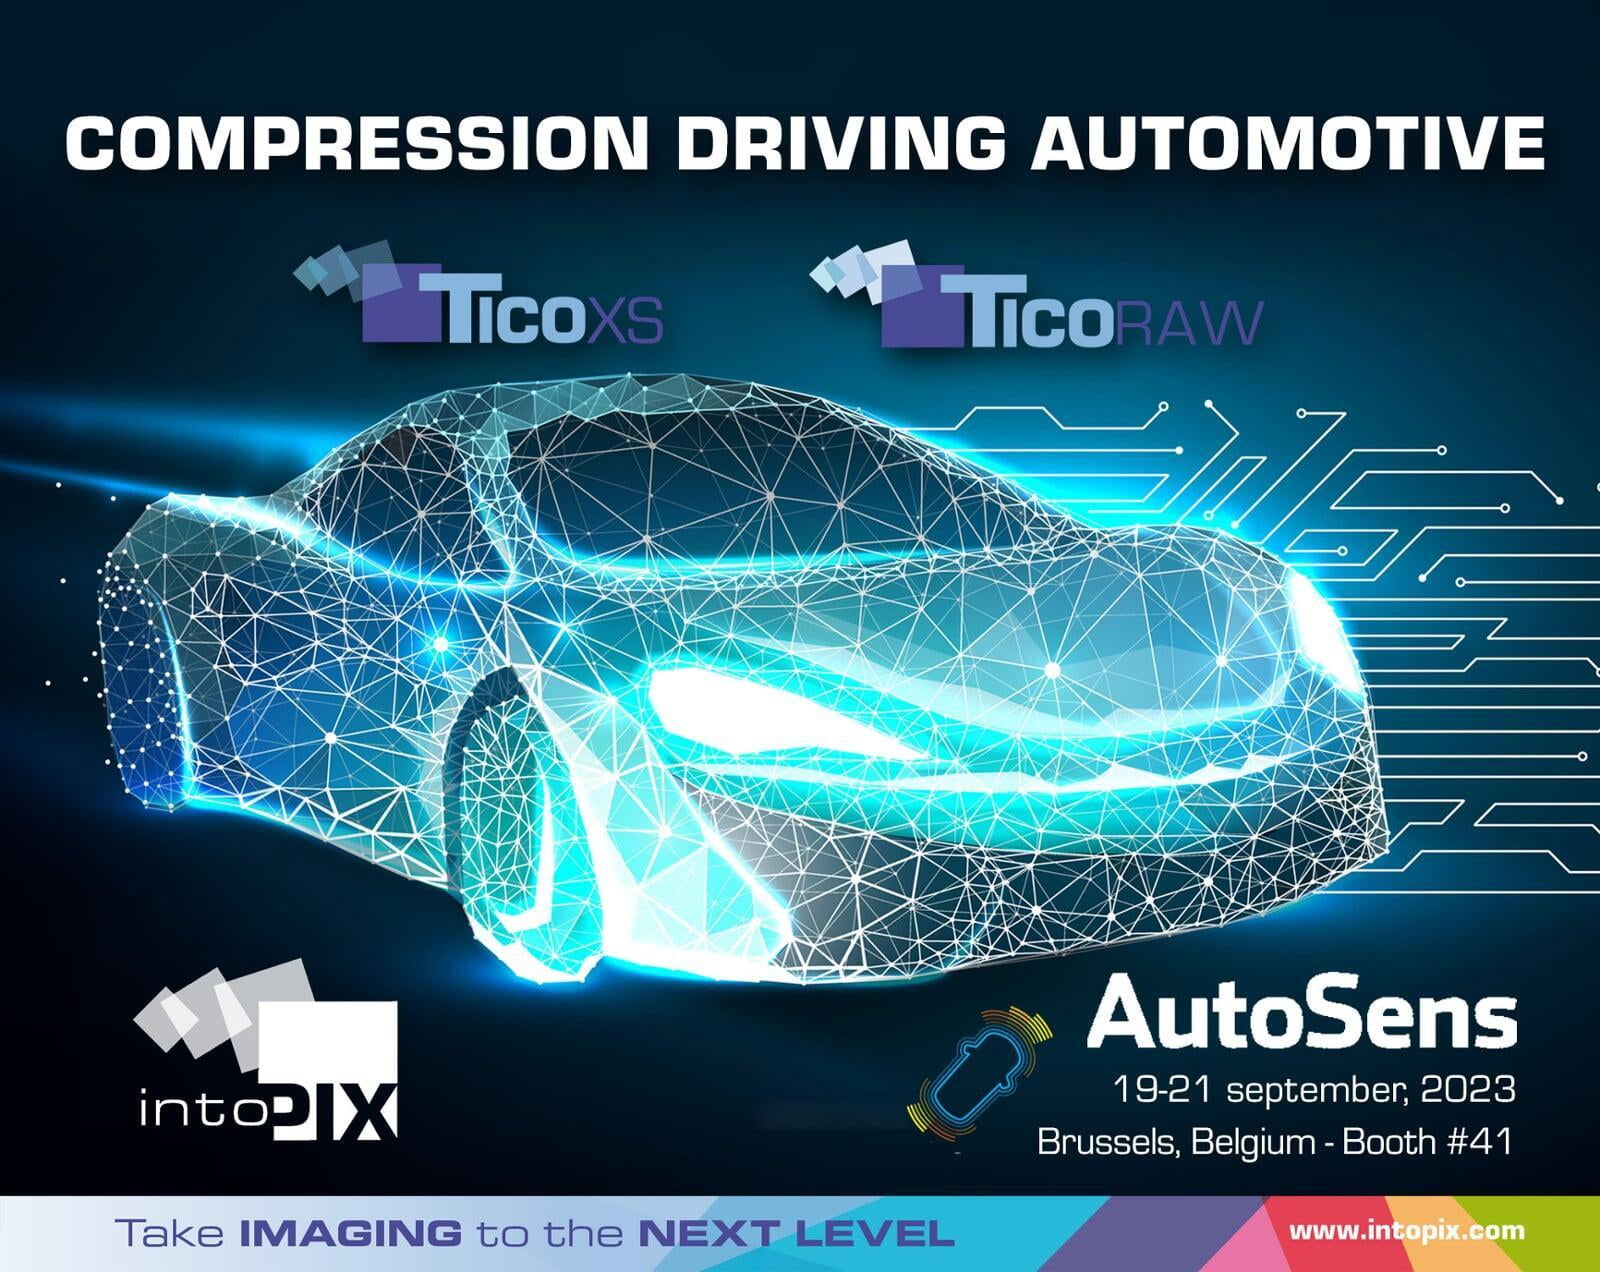 intoPIX présente les nouvelles normes et technologies de compression vidéo légère qui stimulent l'innovation automobile à AutoSens 2023